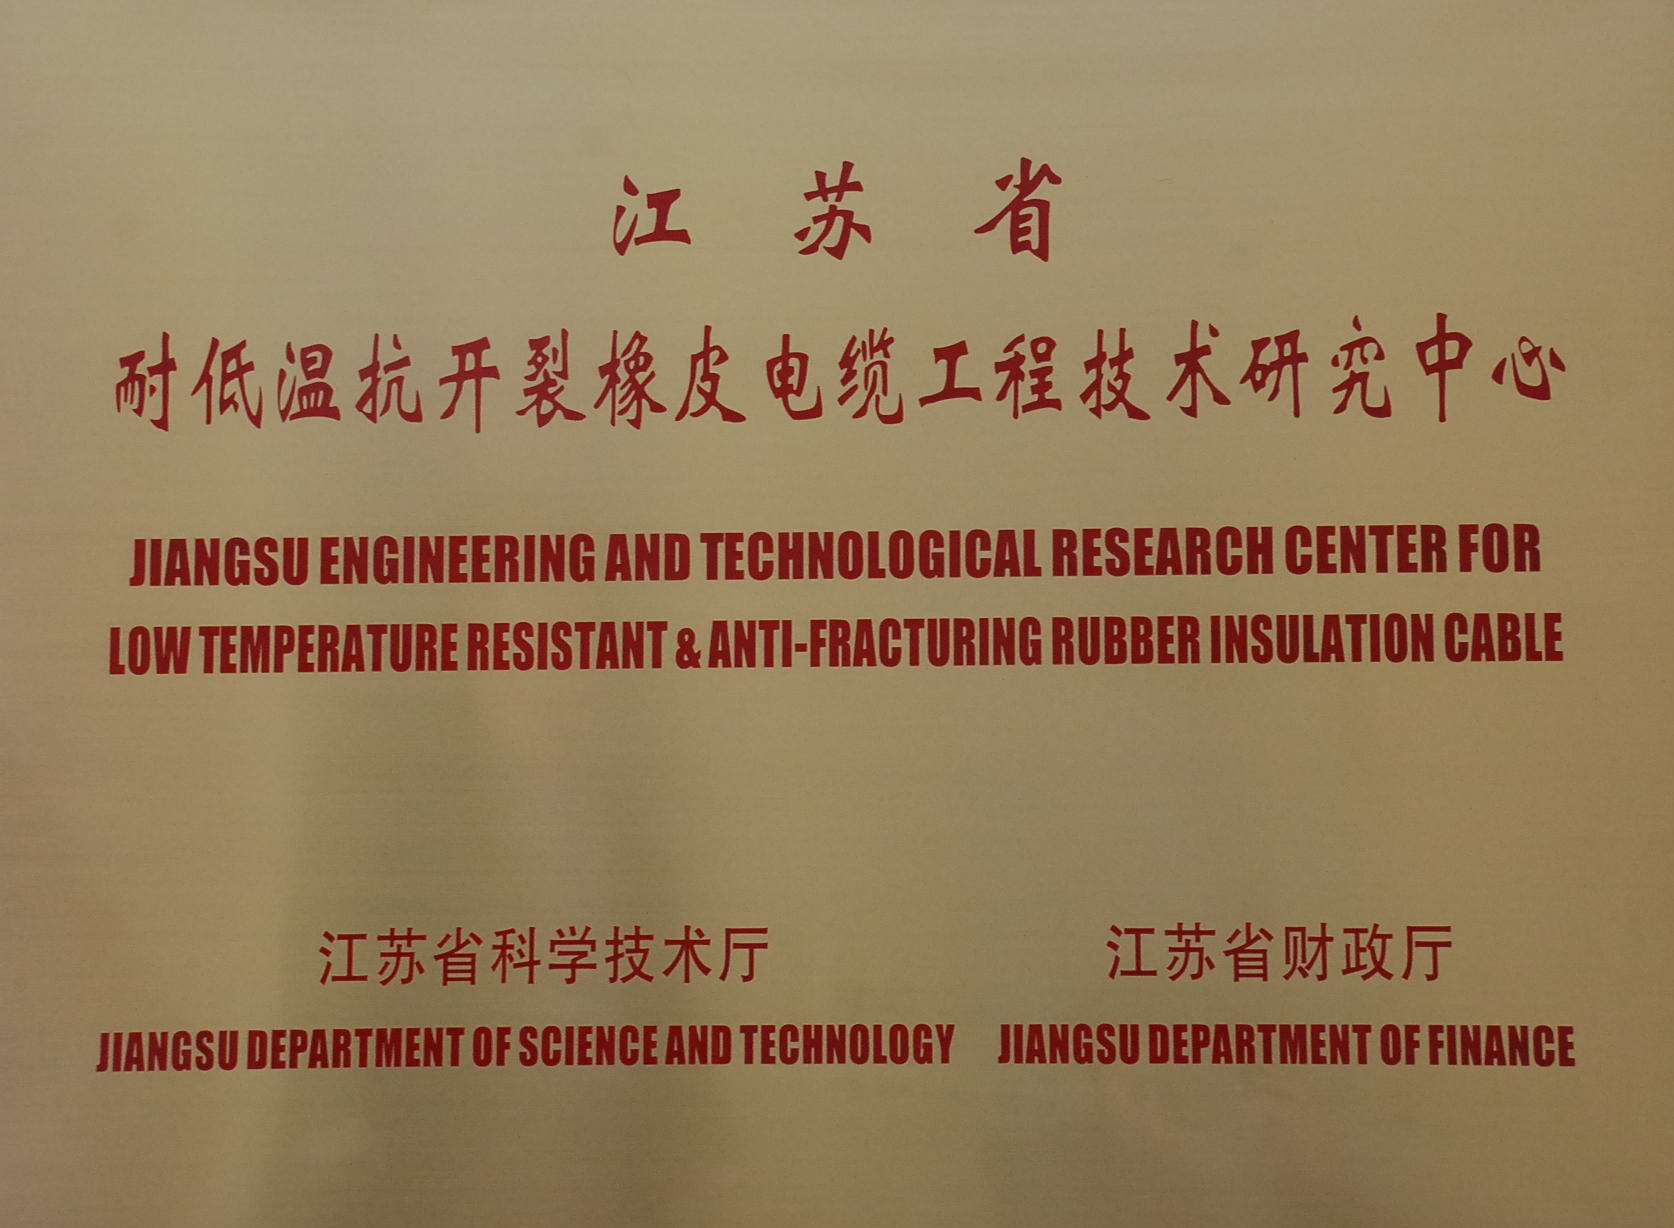 橡皮电缆工程技术研究中心